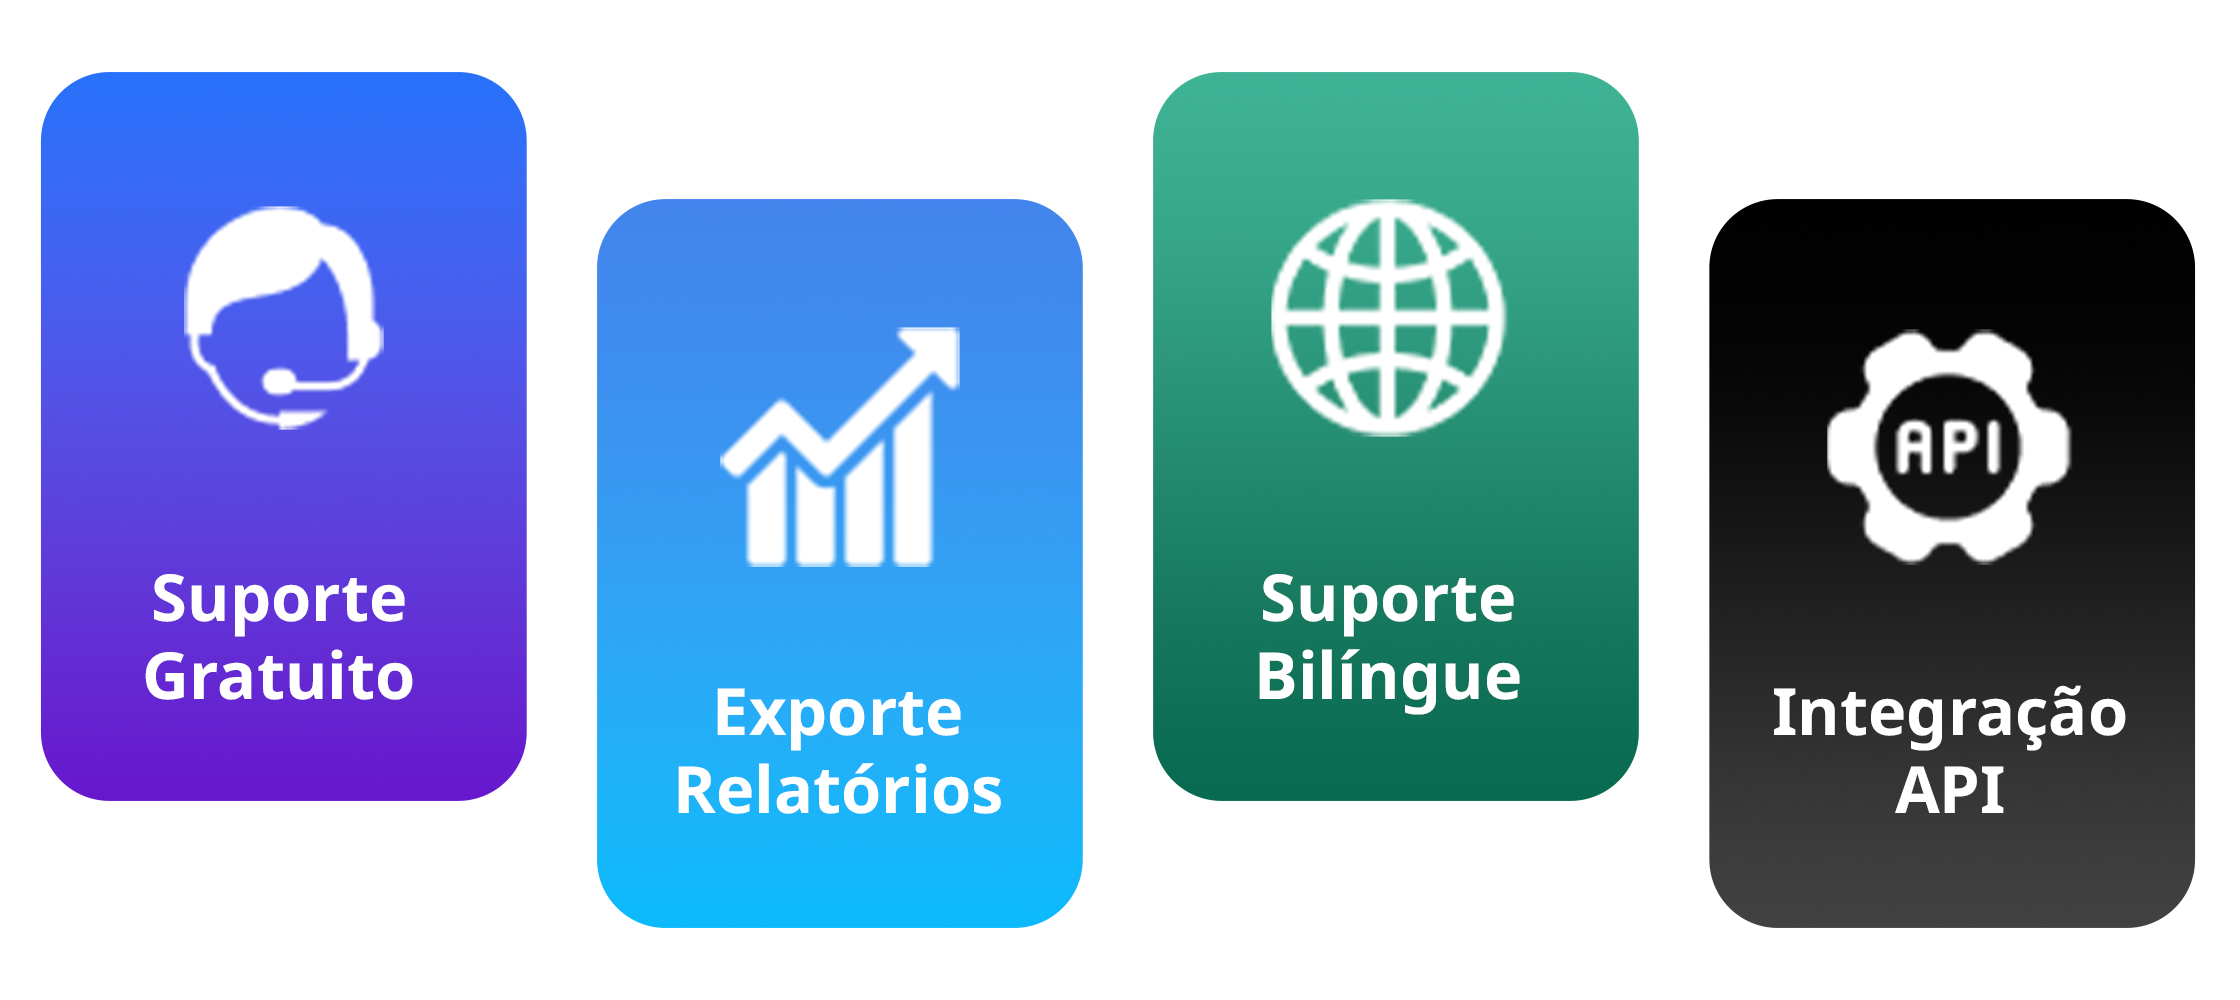 Suporte gratuito, exporte relatórios, suporte bilíngue e integração API